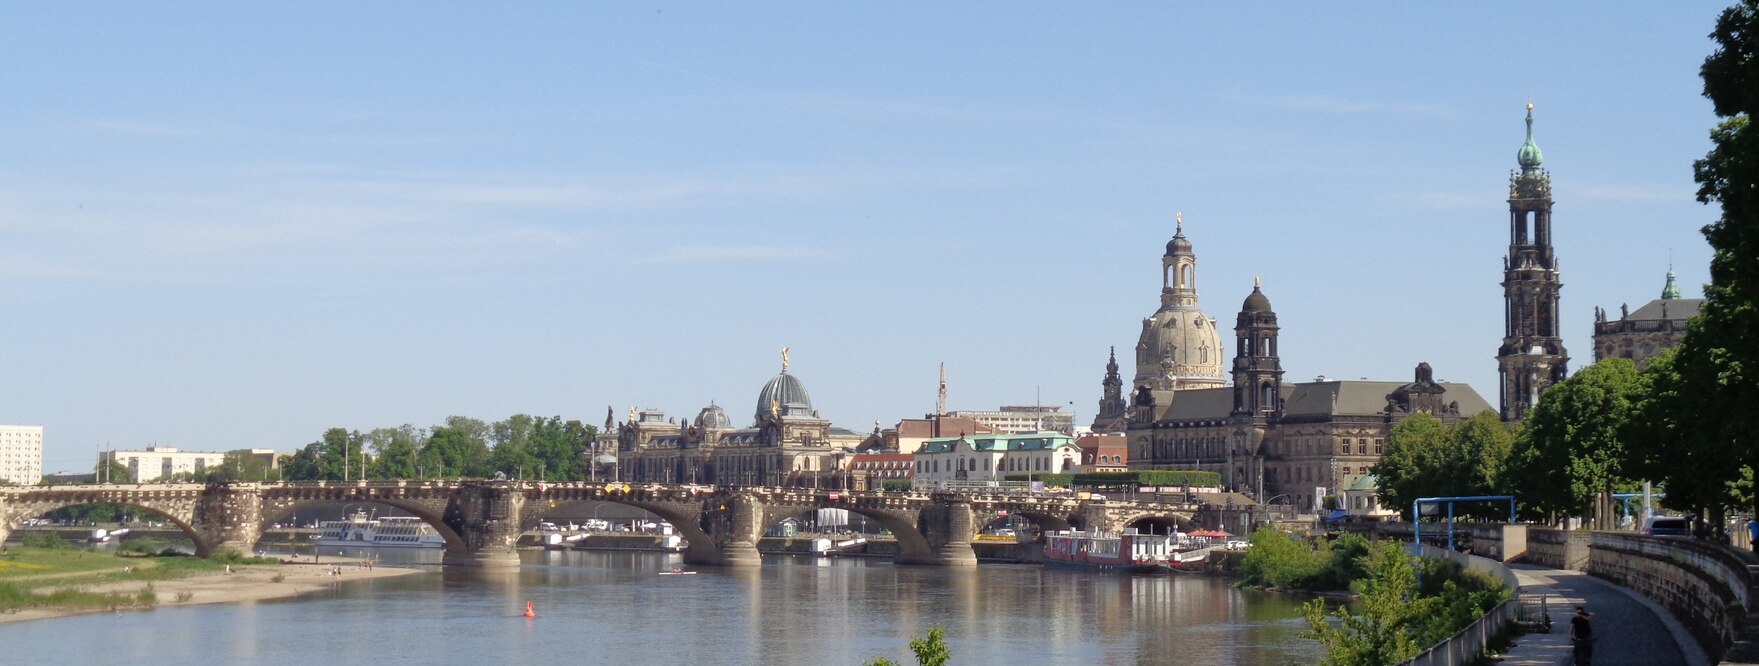 Blick auf Dresdens Altstadt über die Elbe von Westen, mit Augustusbrücke, Frauenkirche, Turm der katholischen Hofkirche, Schiffsanlegestellen unter der Brücke, blauer Himmel mit Schleierwolken